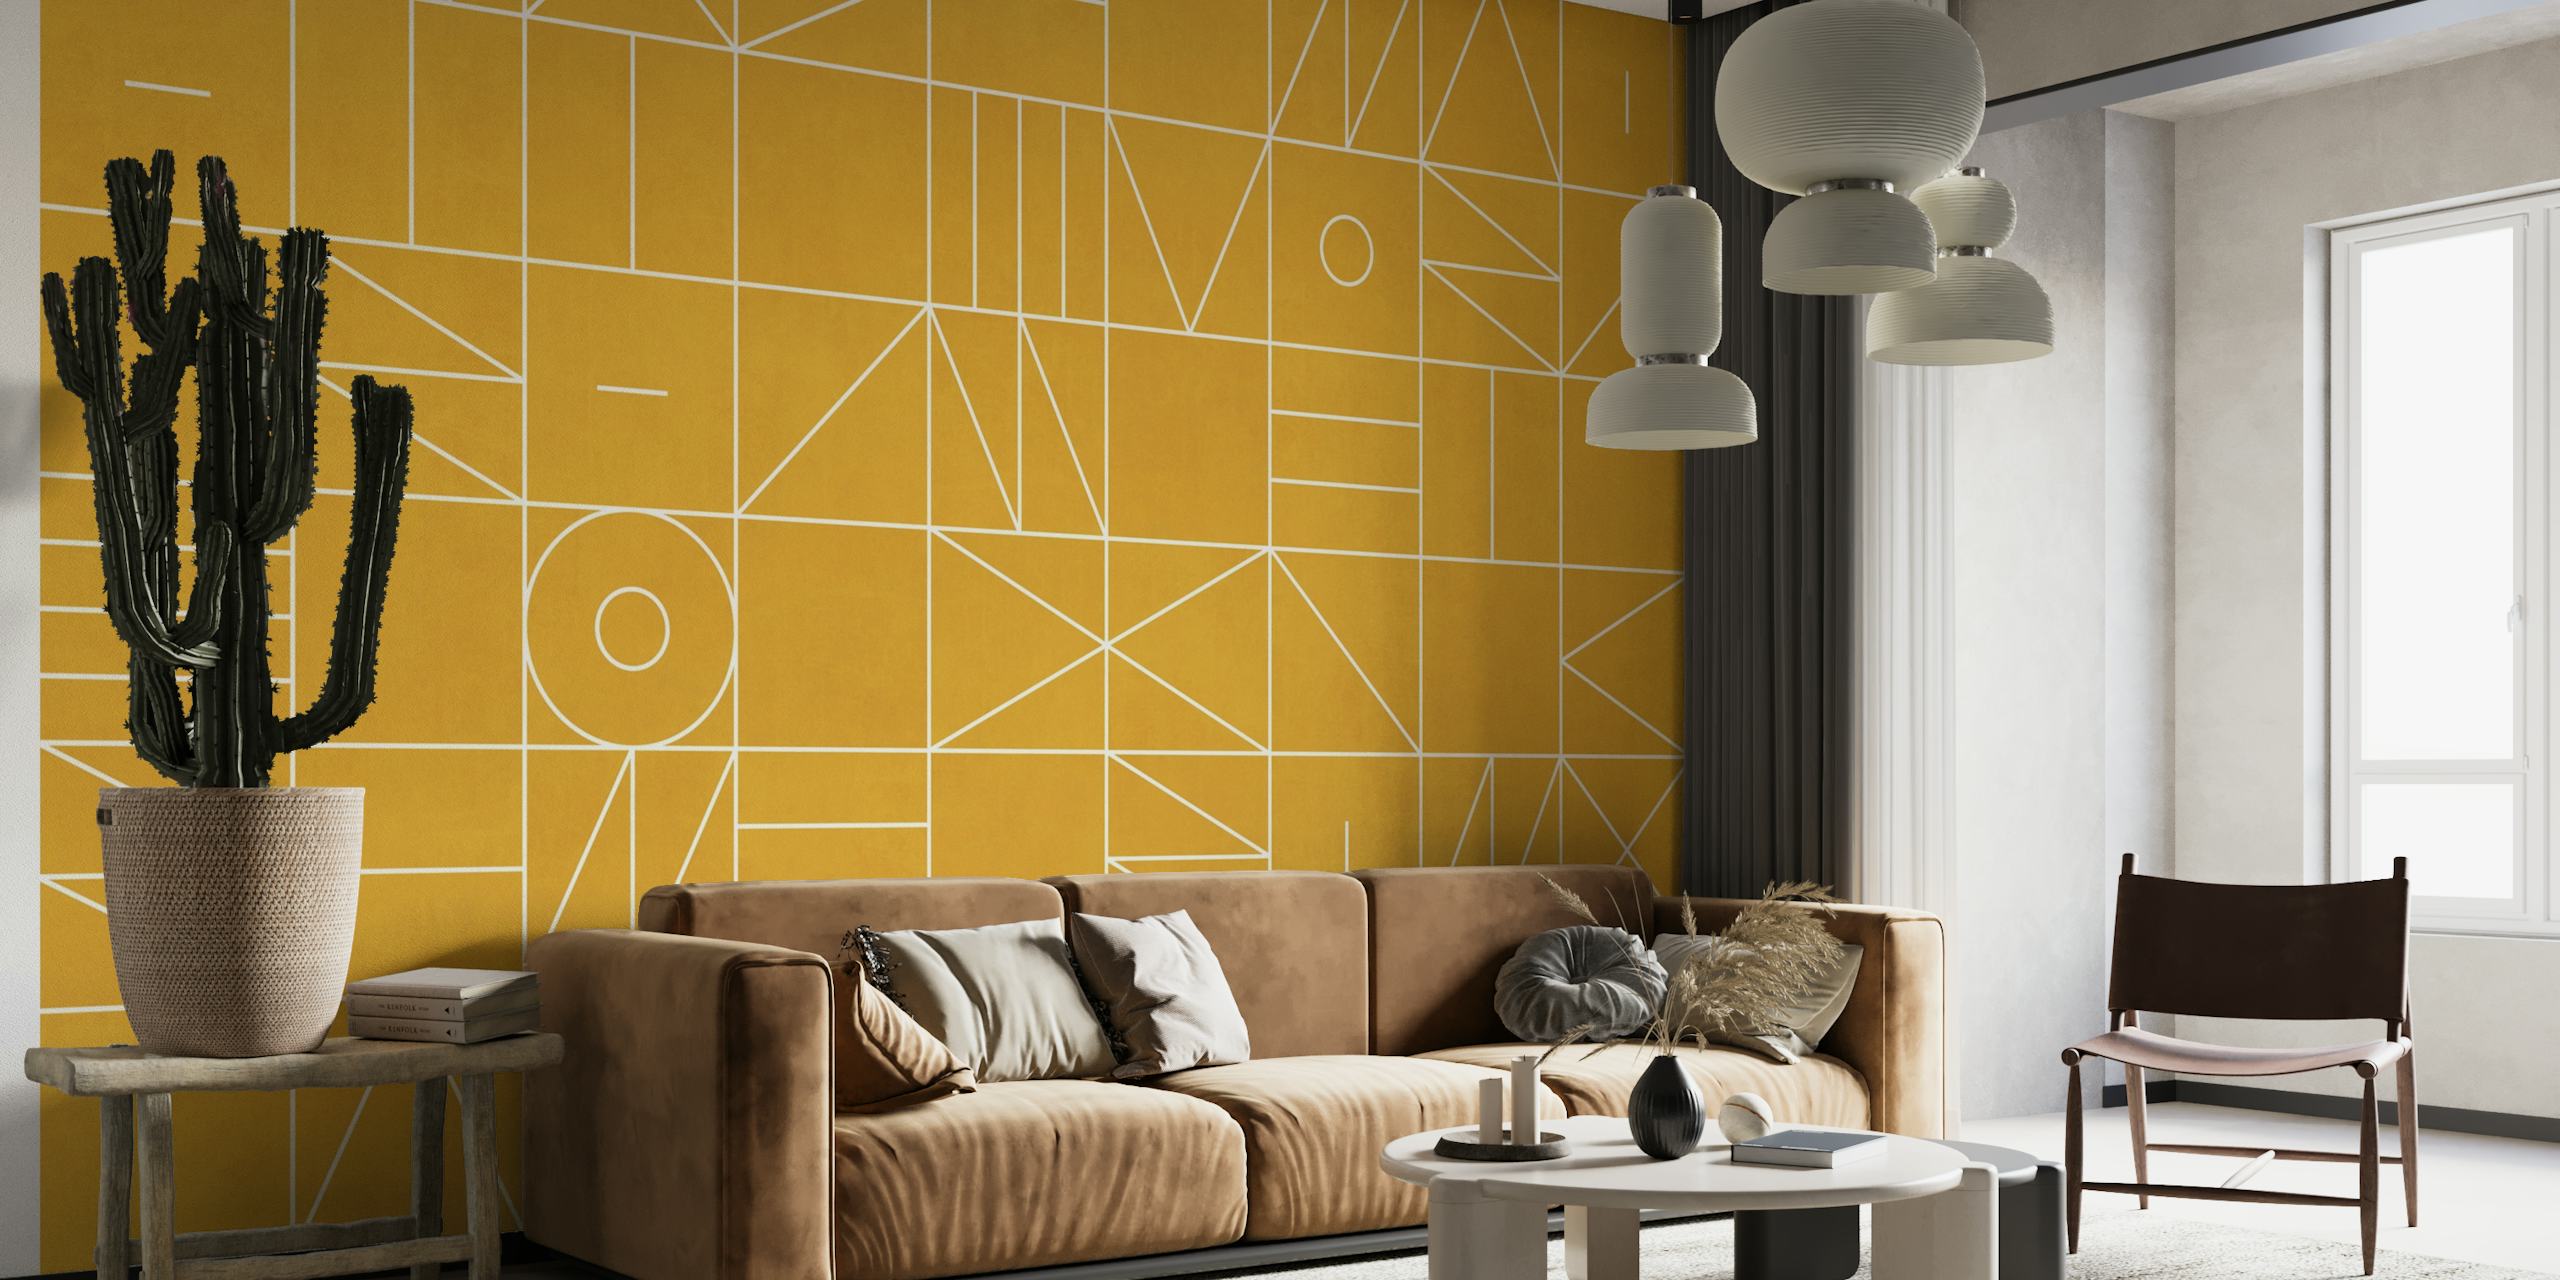 Fototapete mit geometrischem Muster in goldenem Farbton mit abstrakten Formen und Linien